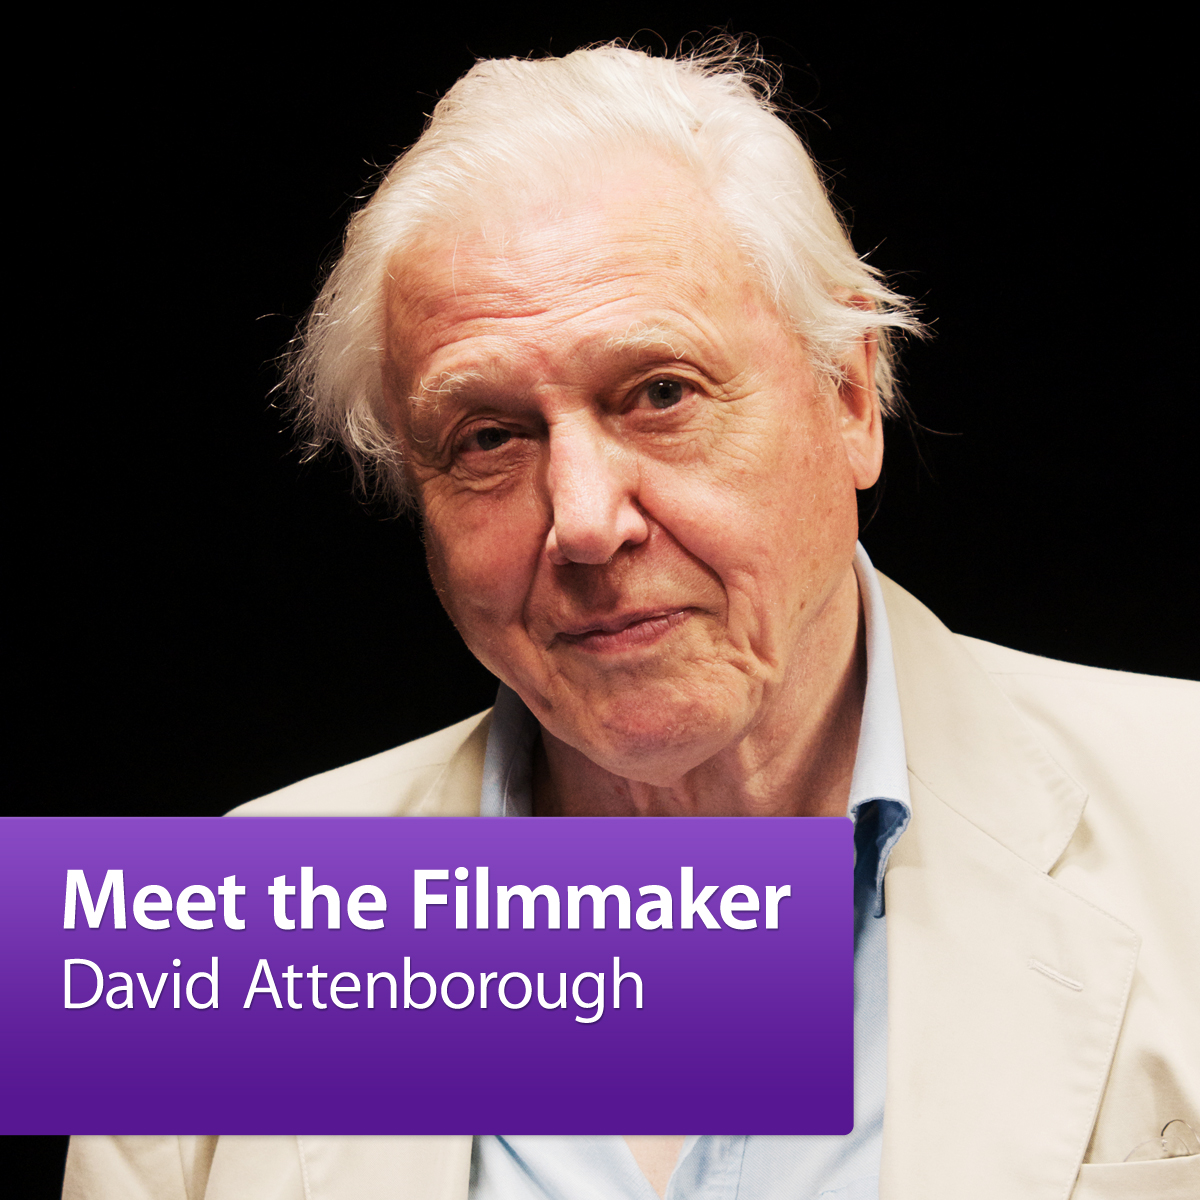 David Attenborough: Meet the Filmmaker